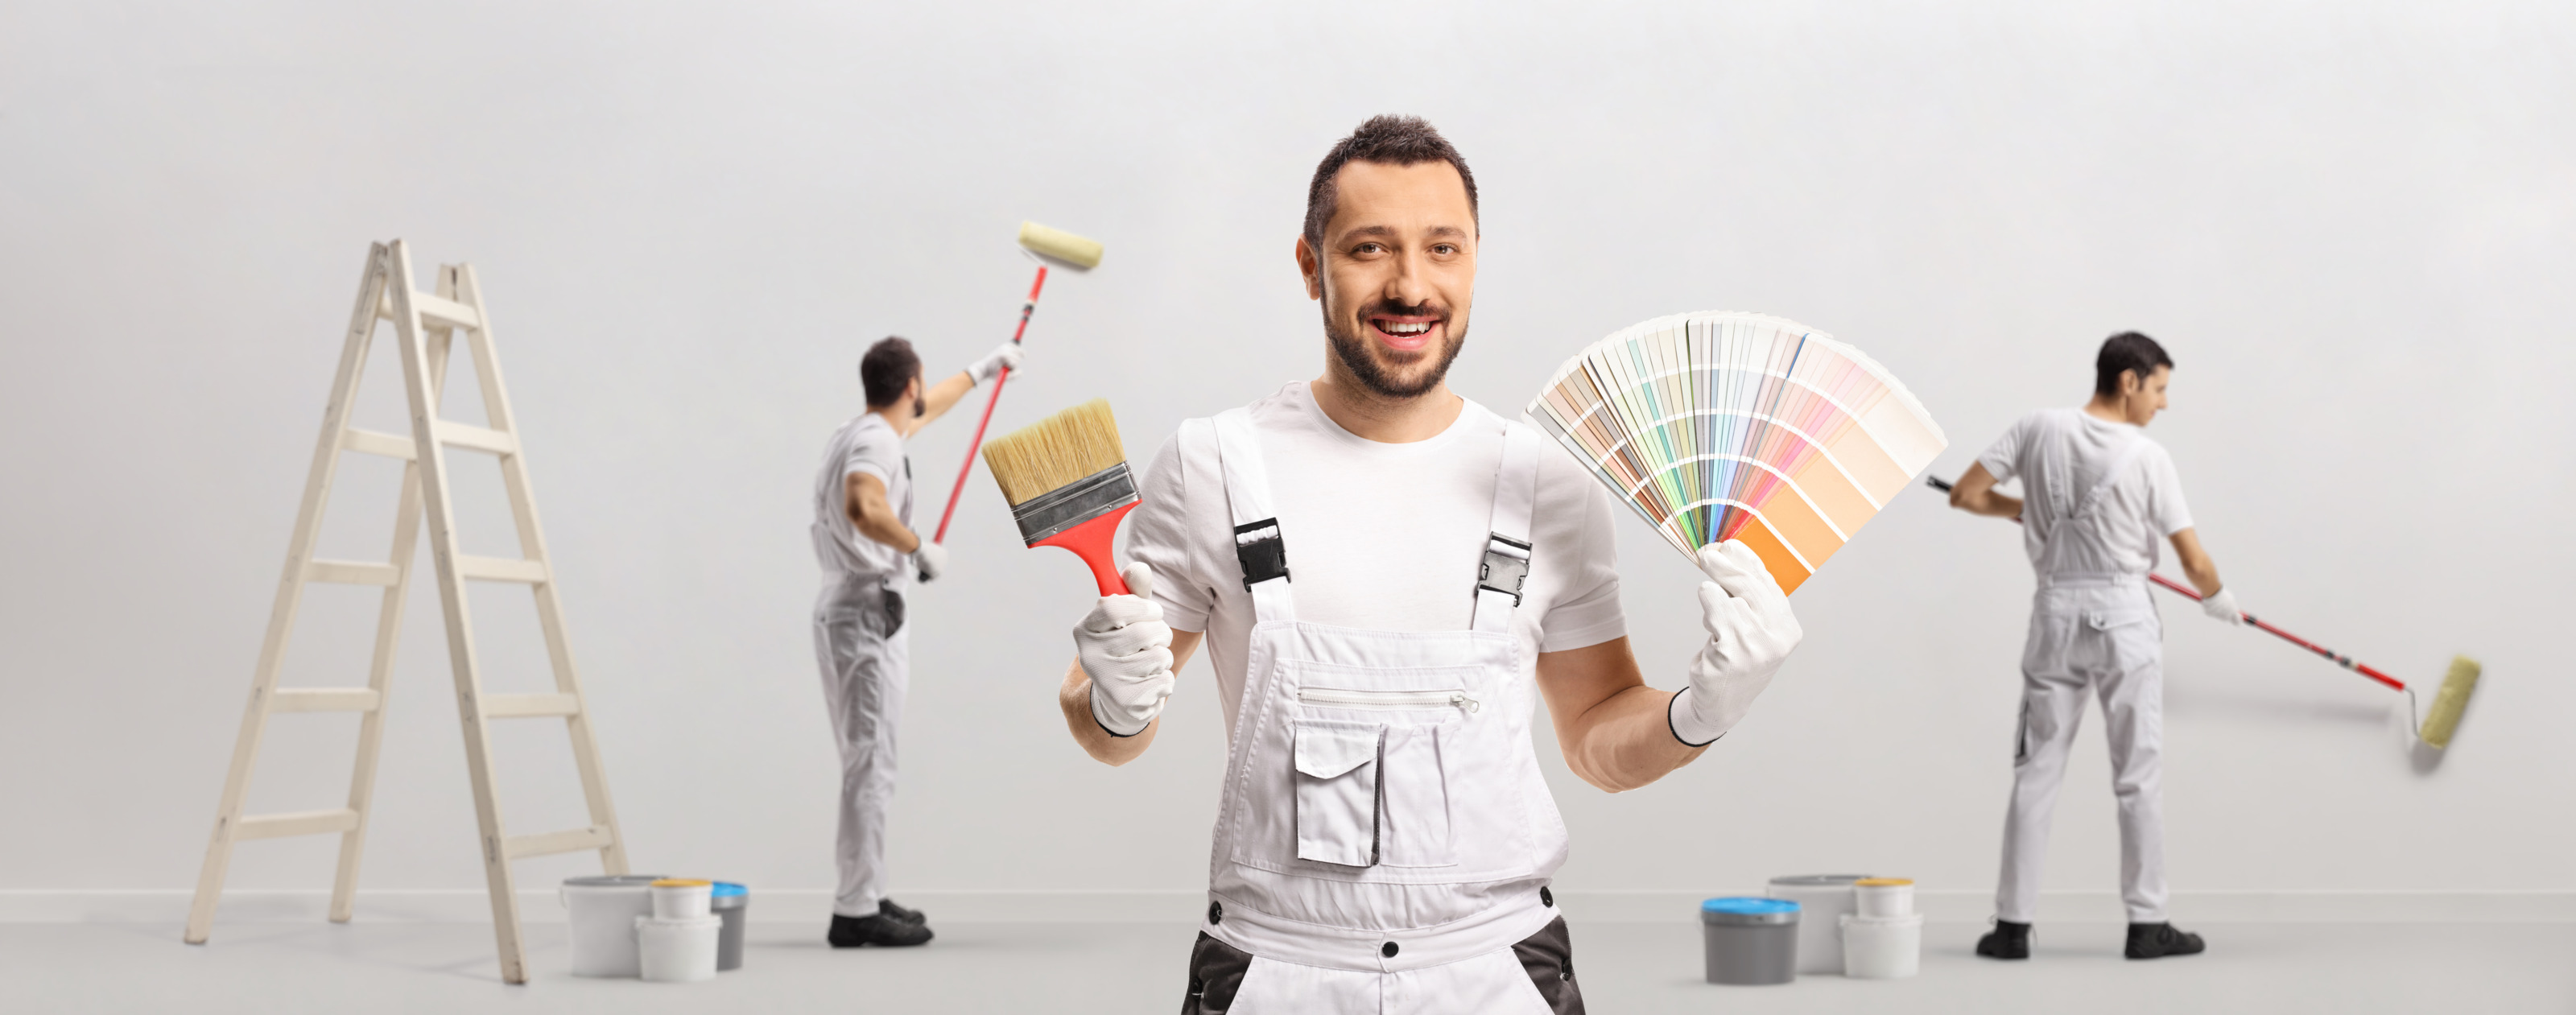 Lächelnde Person in weißer Arbeitskleidung hält Malerpinsel sowie Farbfächer in den Händen während zwei weitere Personen im Hintergrund eine Wand ausmalen